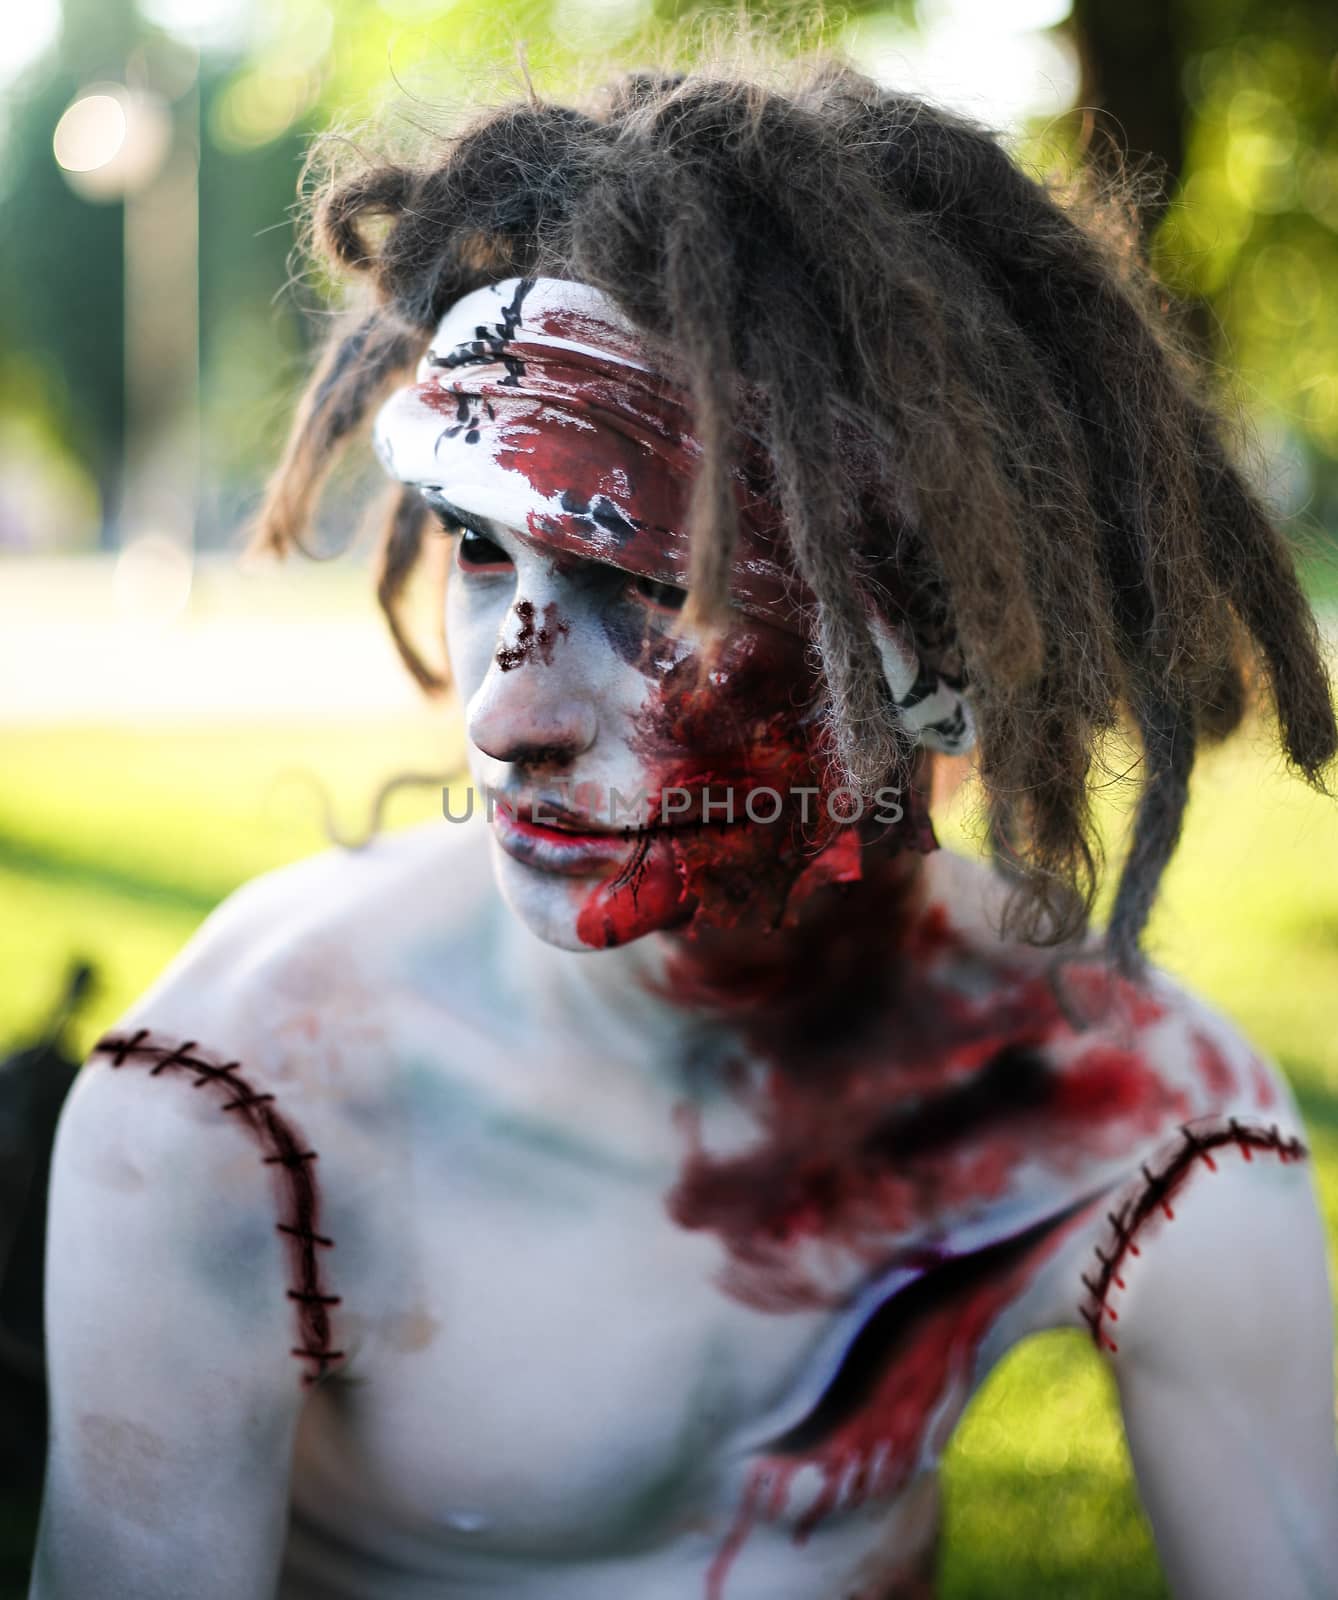 zombie portrait closeup, creative background